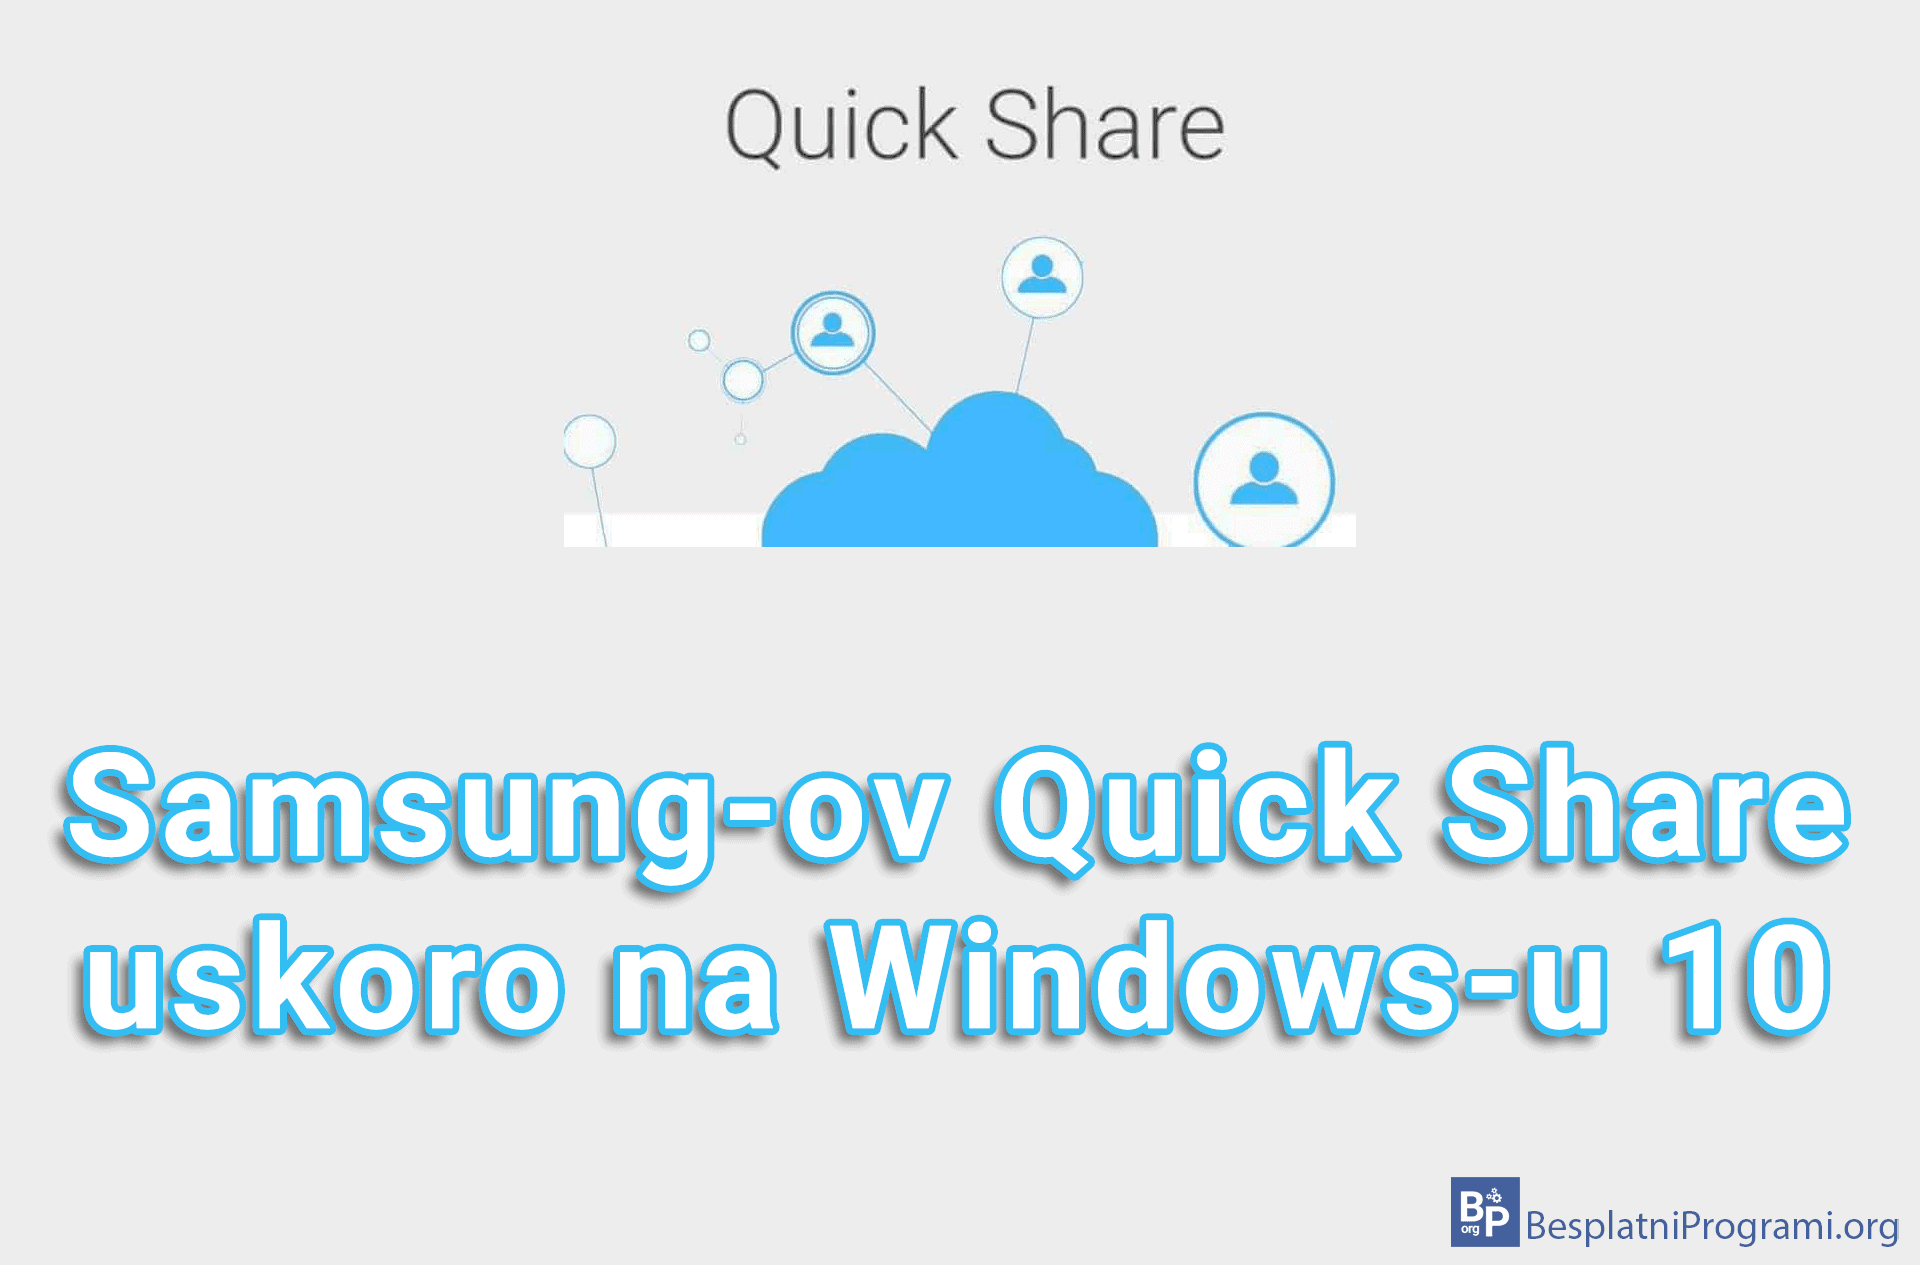 Samsung-ov Quick Share uskoro na Windows-u 10